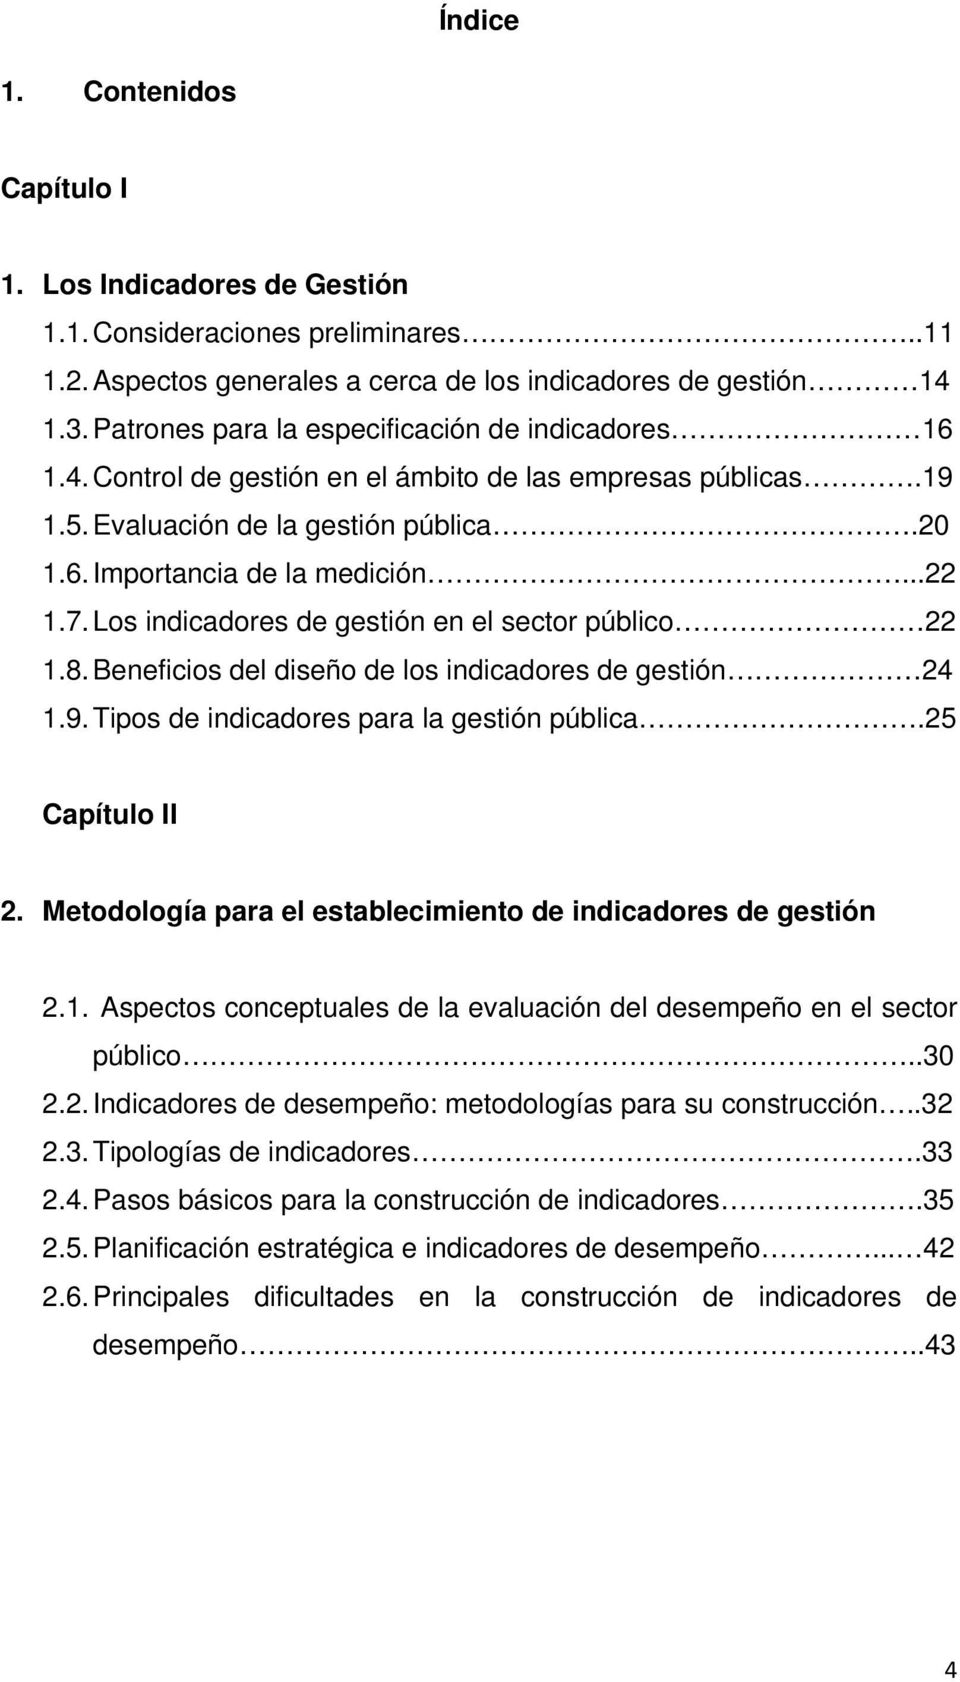 Los indicadores de gestión en el sector público 22 1.8. Beneficios del diseño de los indicadores de gestión 24 1.9. Tipos de indicadores para la gestión pública.25 Capítulo II 2.